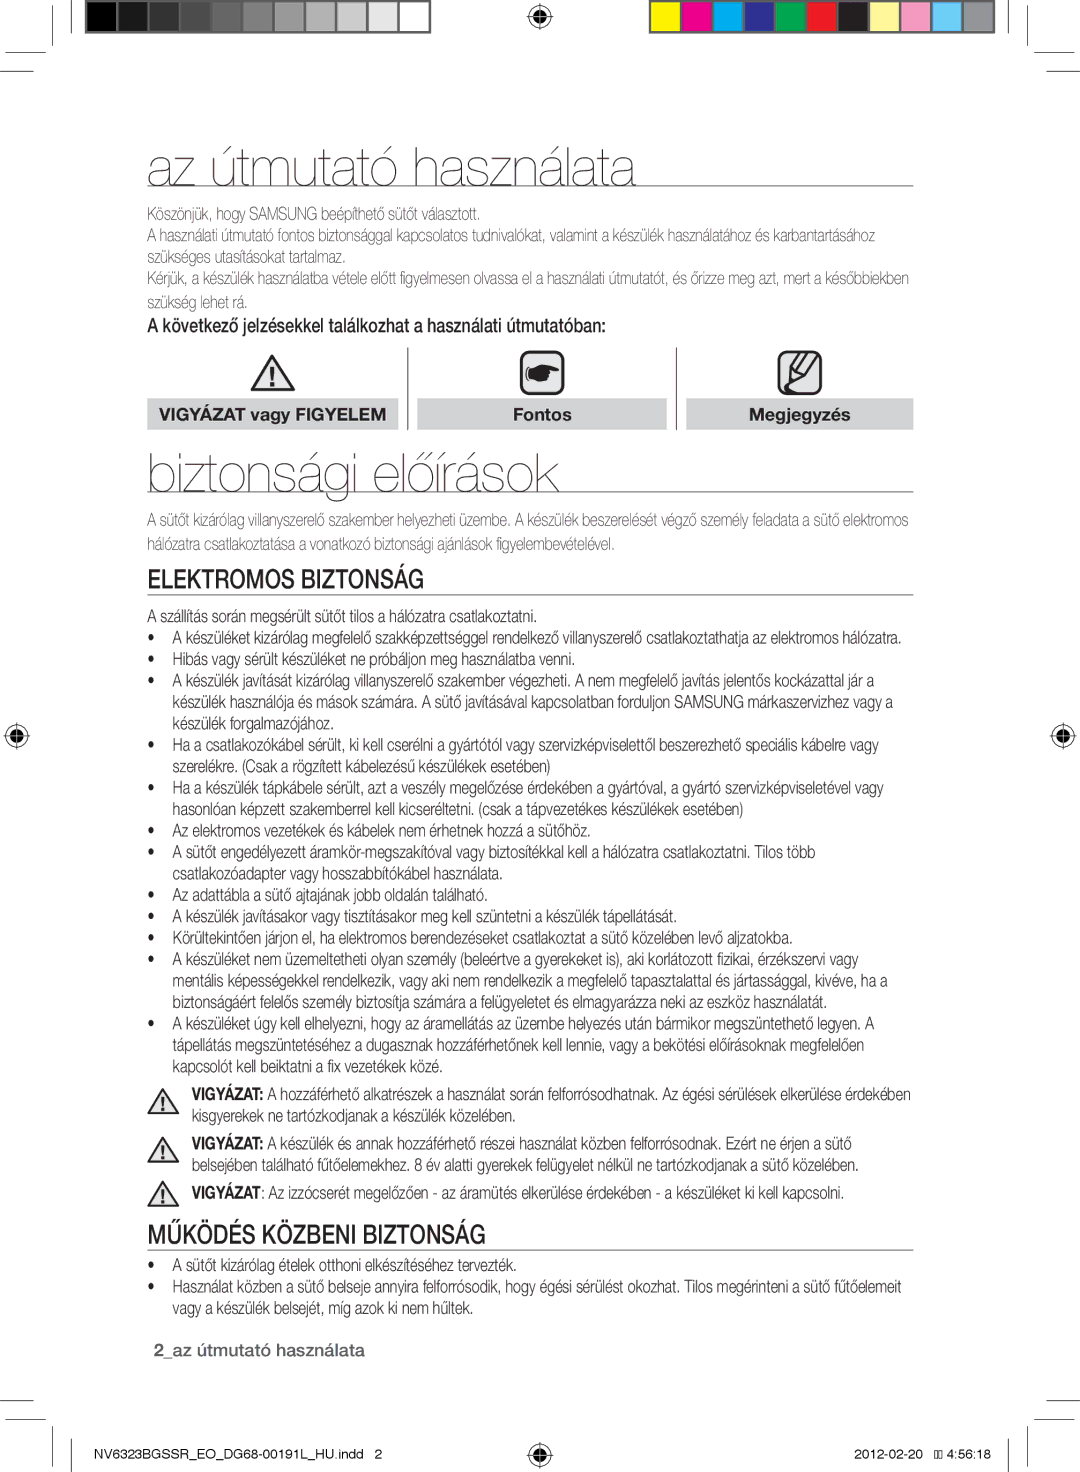 Samsung NV6353BGSSR/EO manual Az útmutató használata, Biztonsági előírások, Elektromos biztonság, Működés közbeni biztonság 